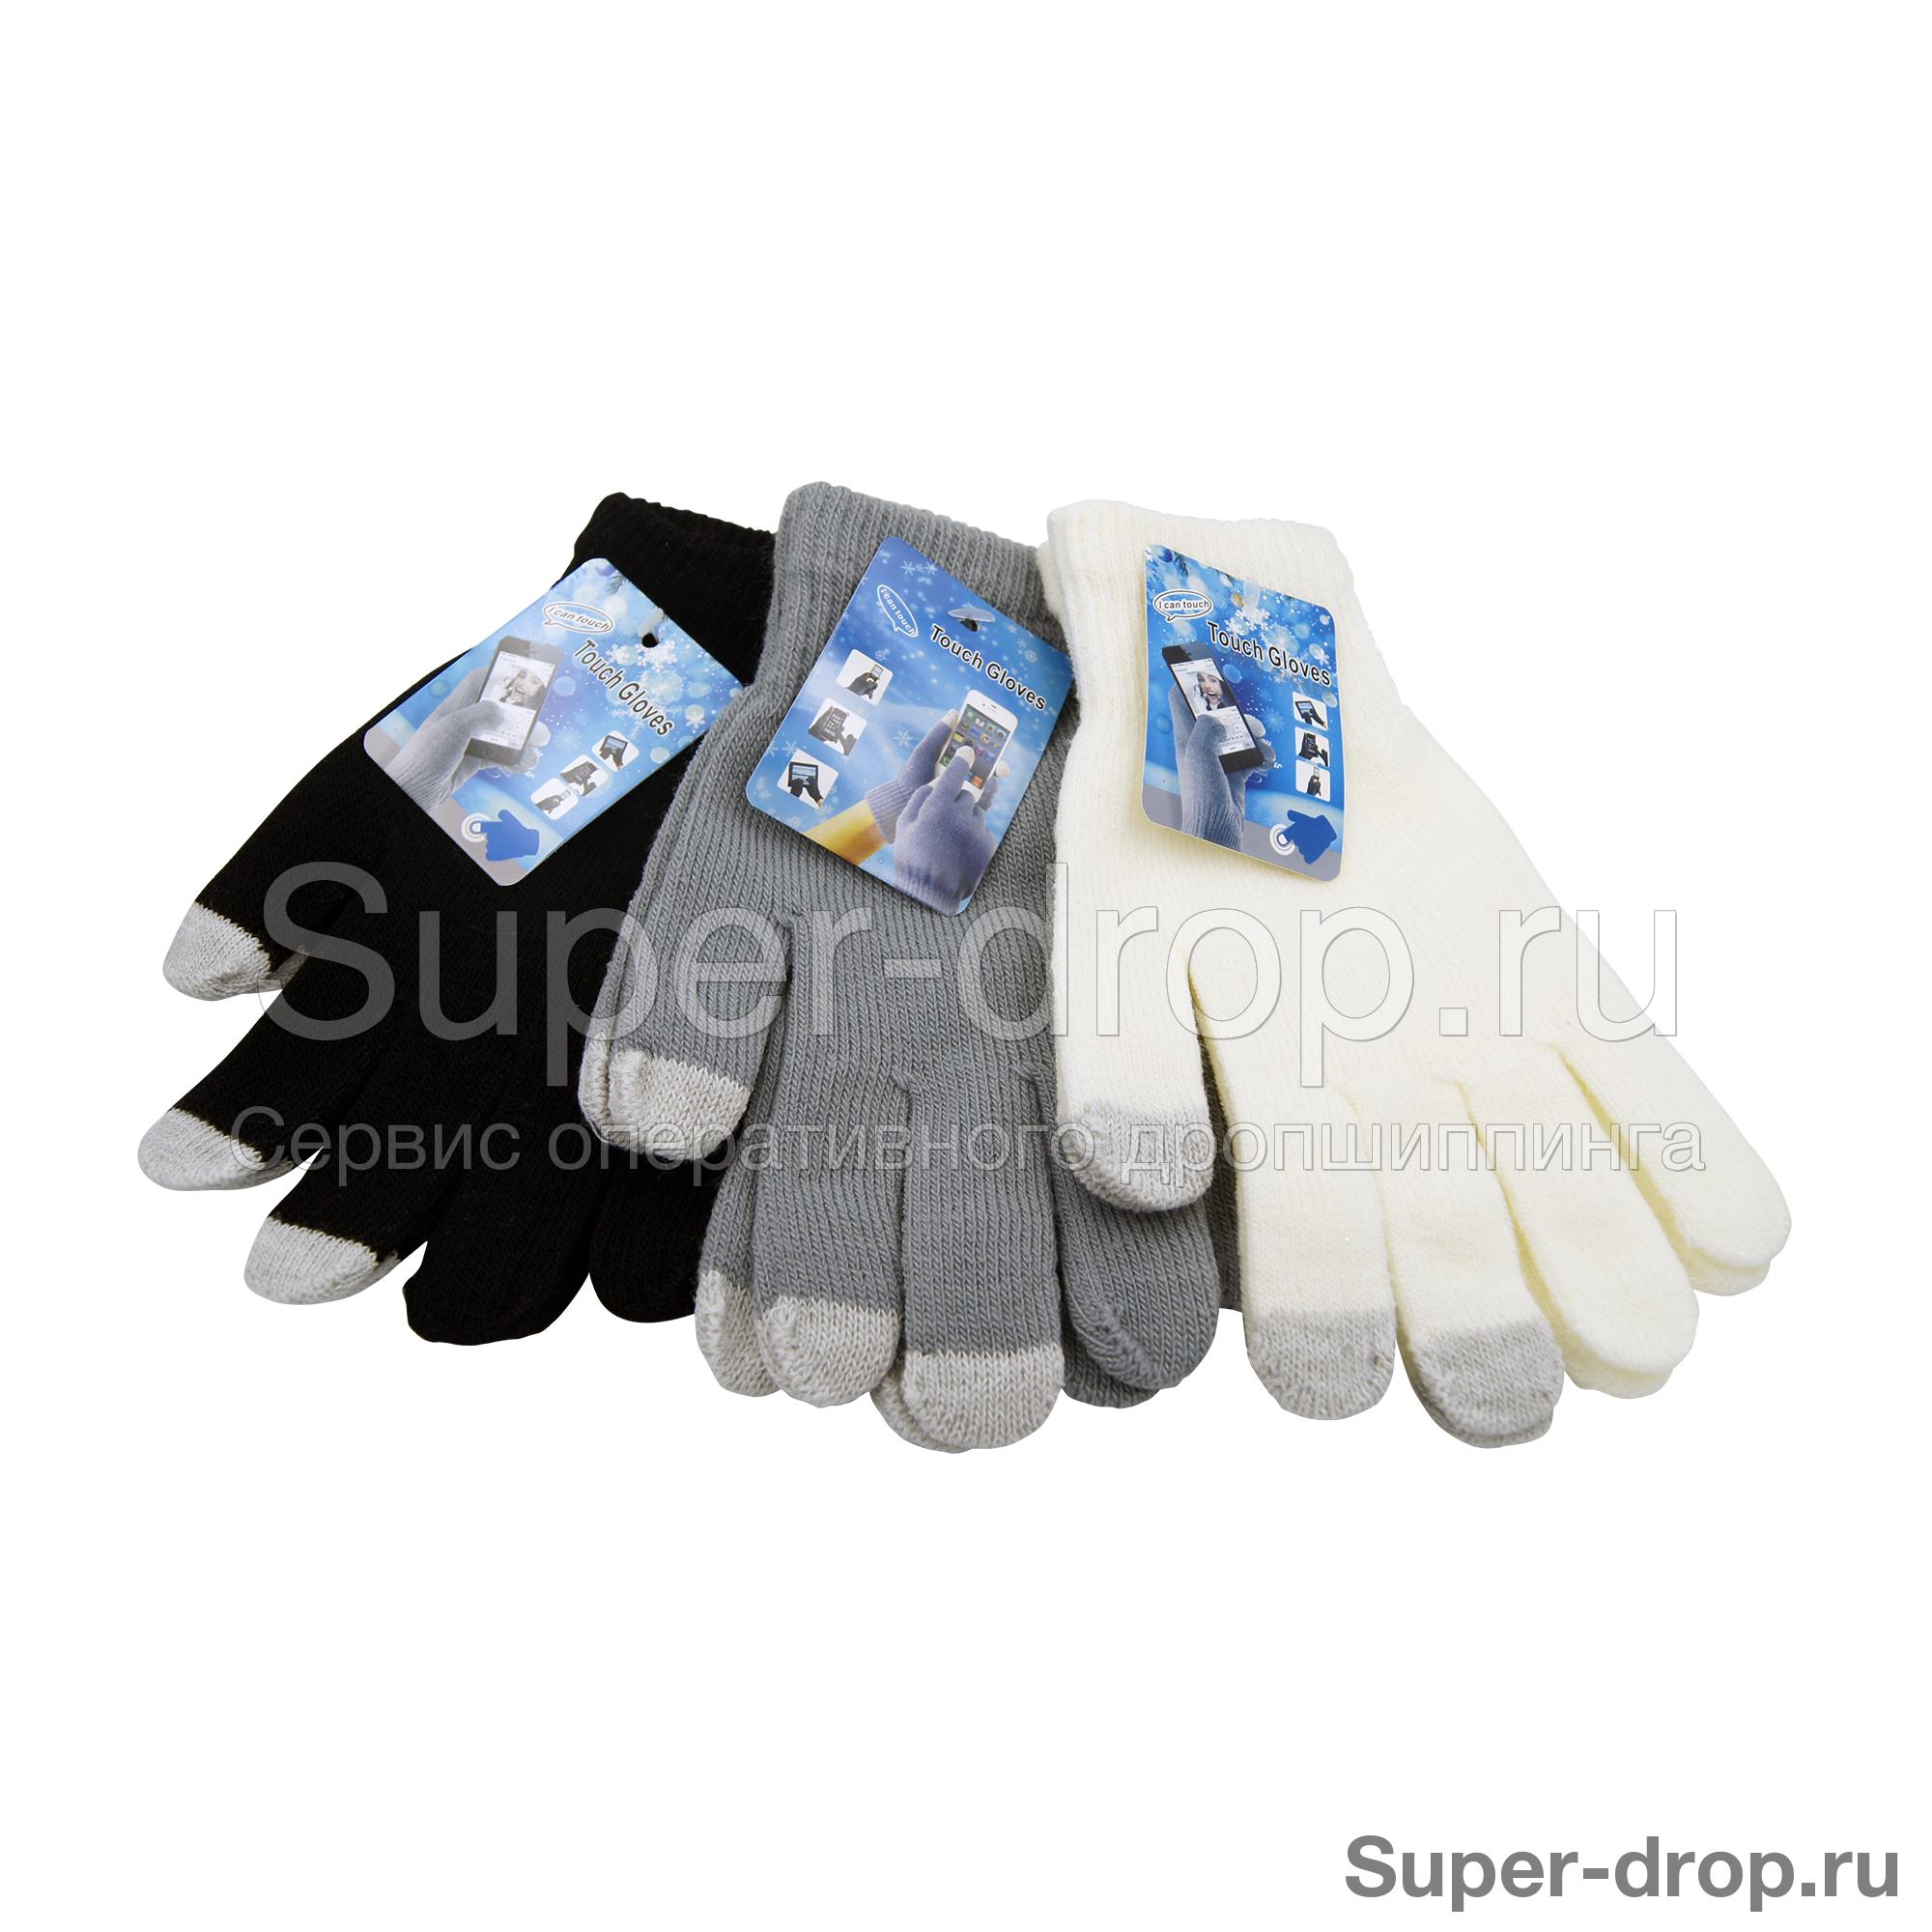 Сенсорные перчатки Touch Gloves